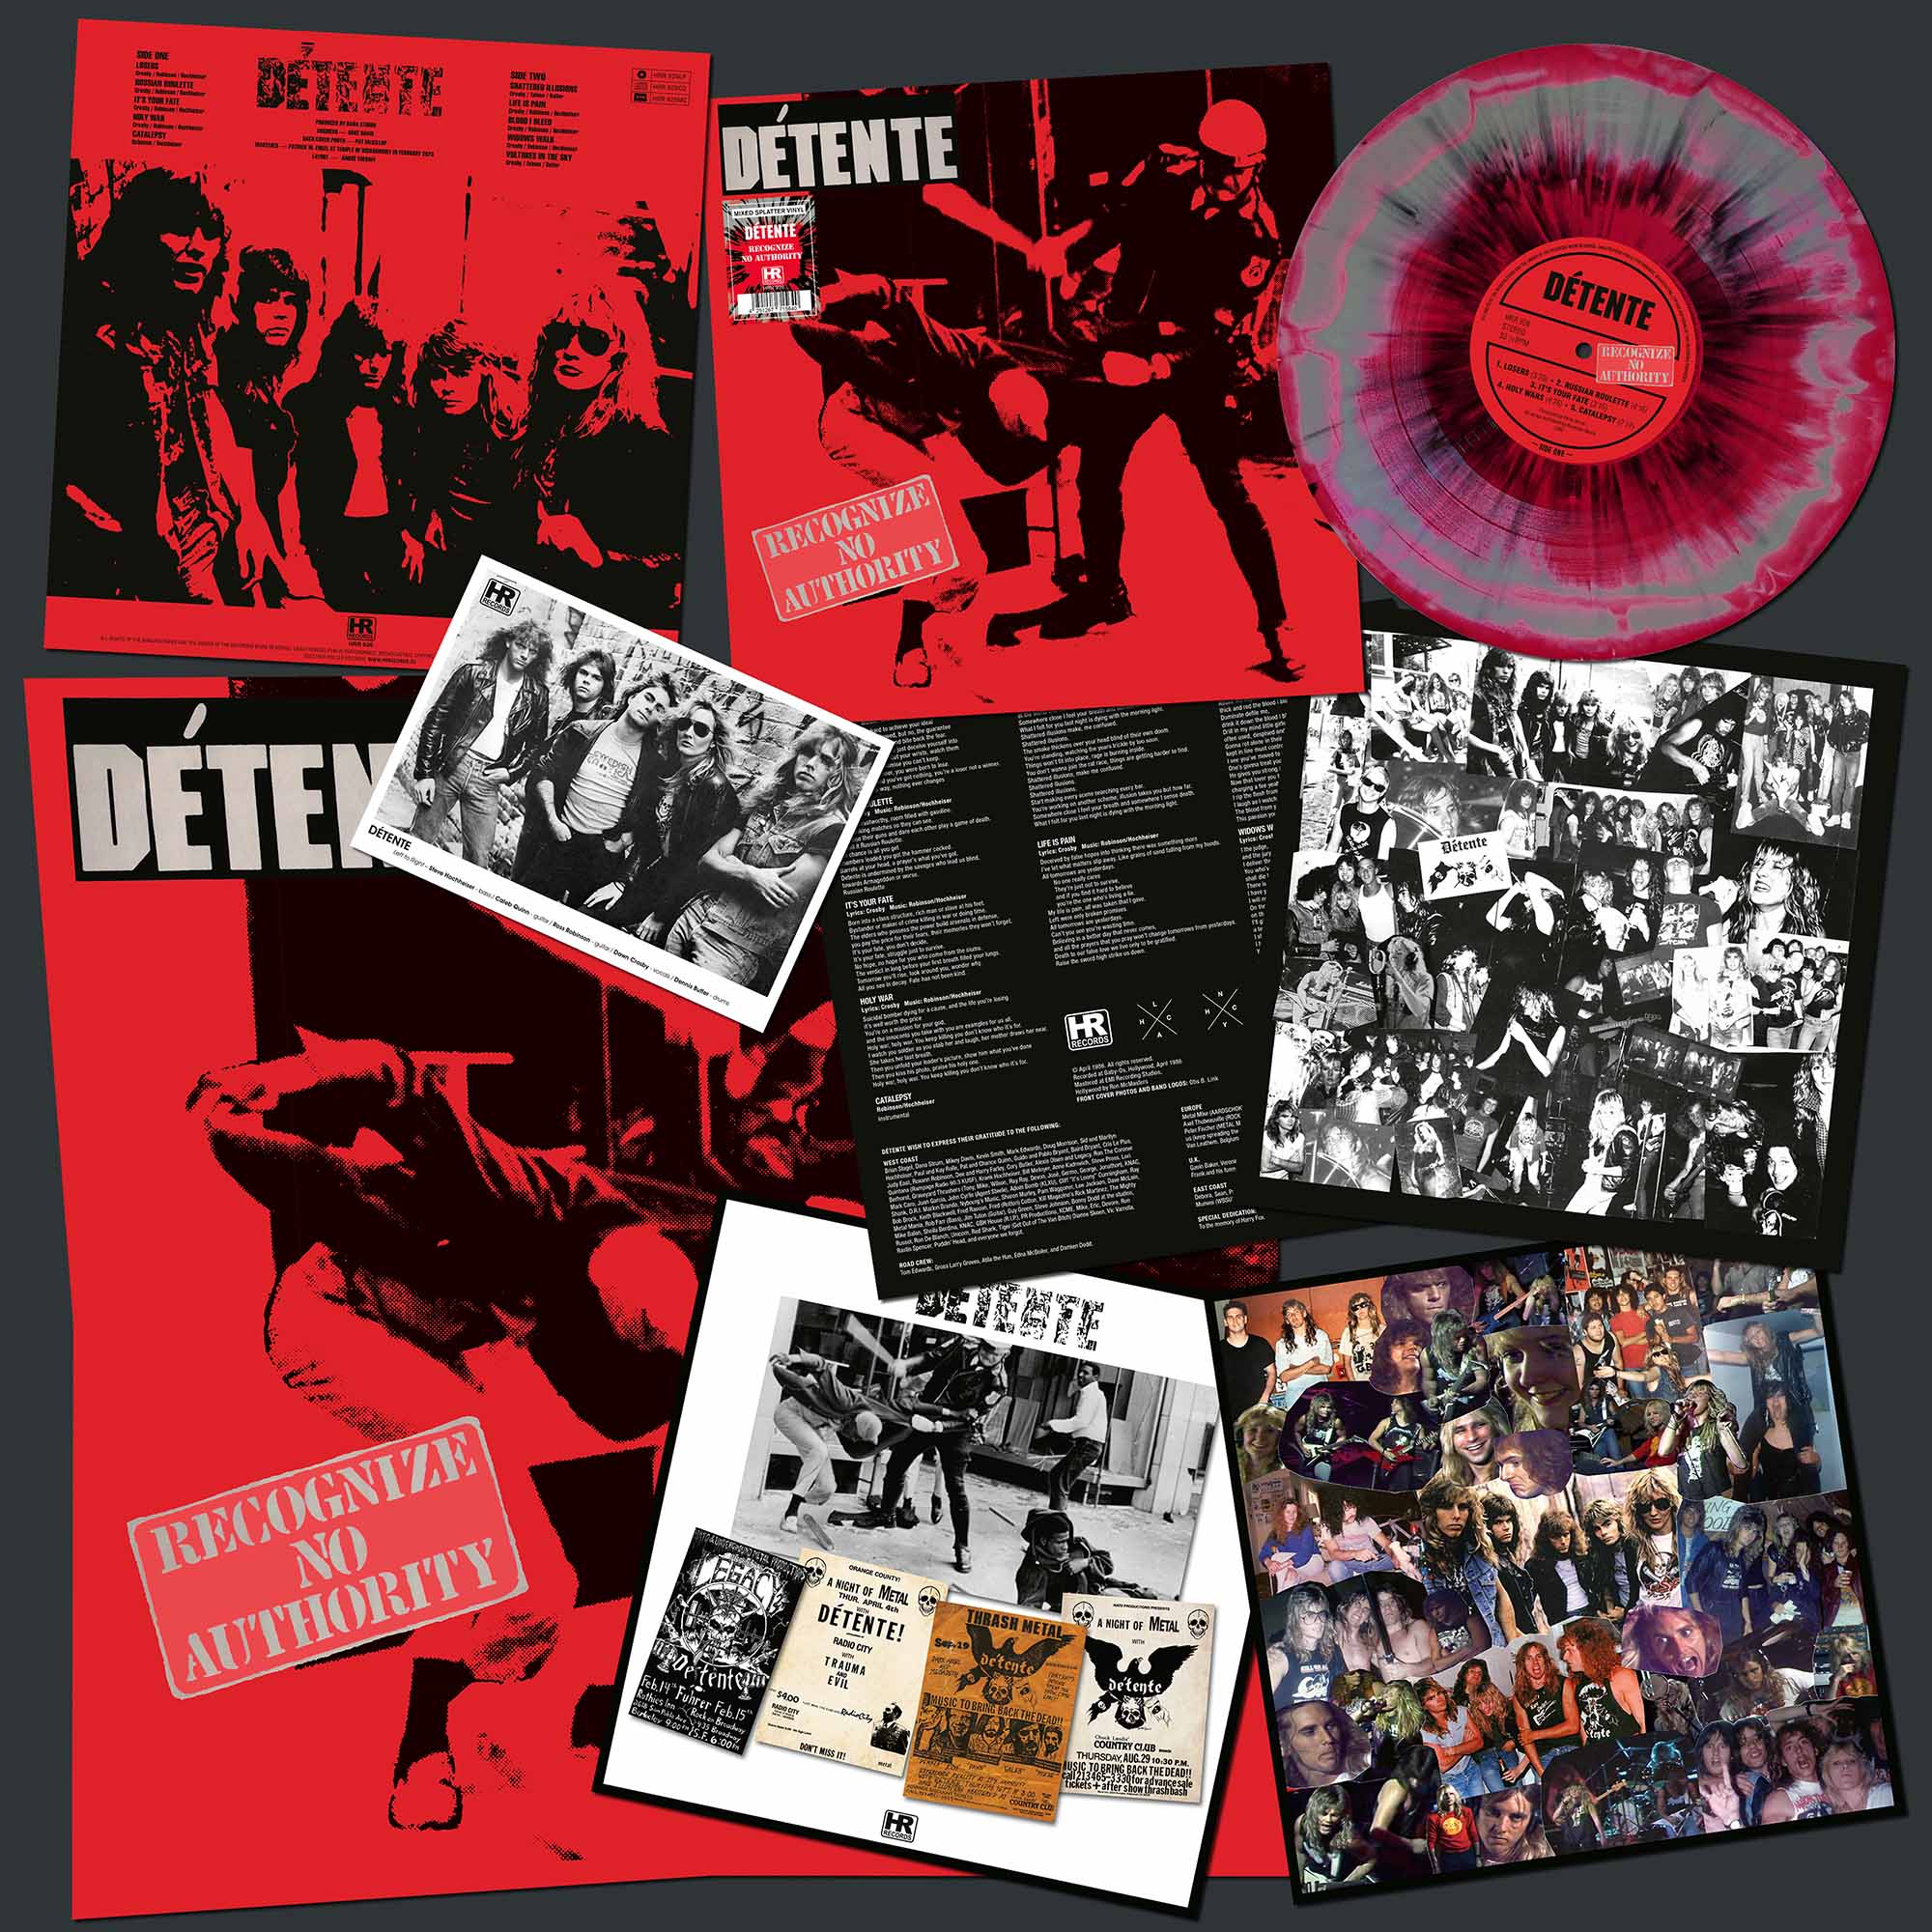 DÉTENTE - Recognize No Authority  LP